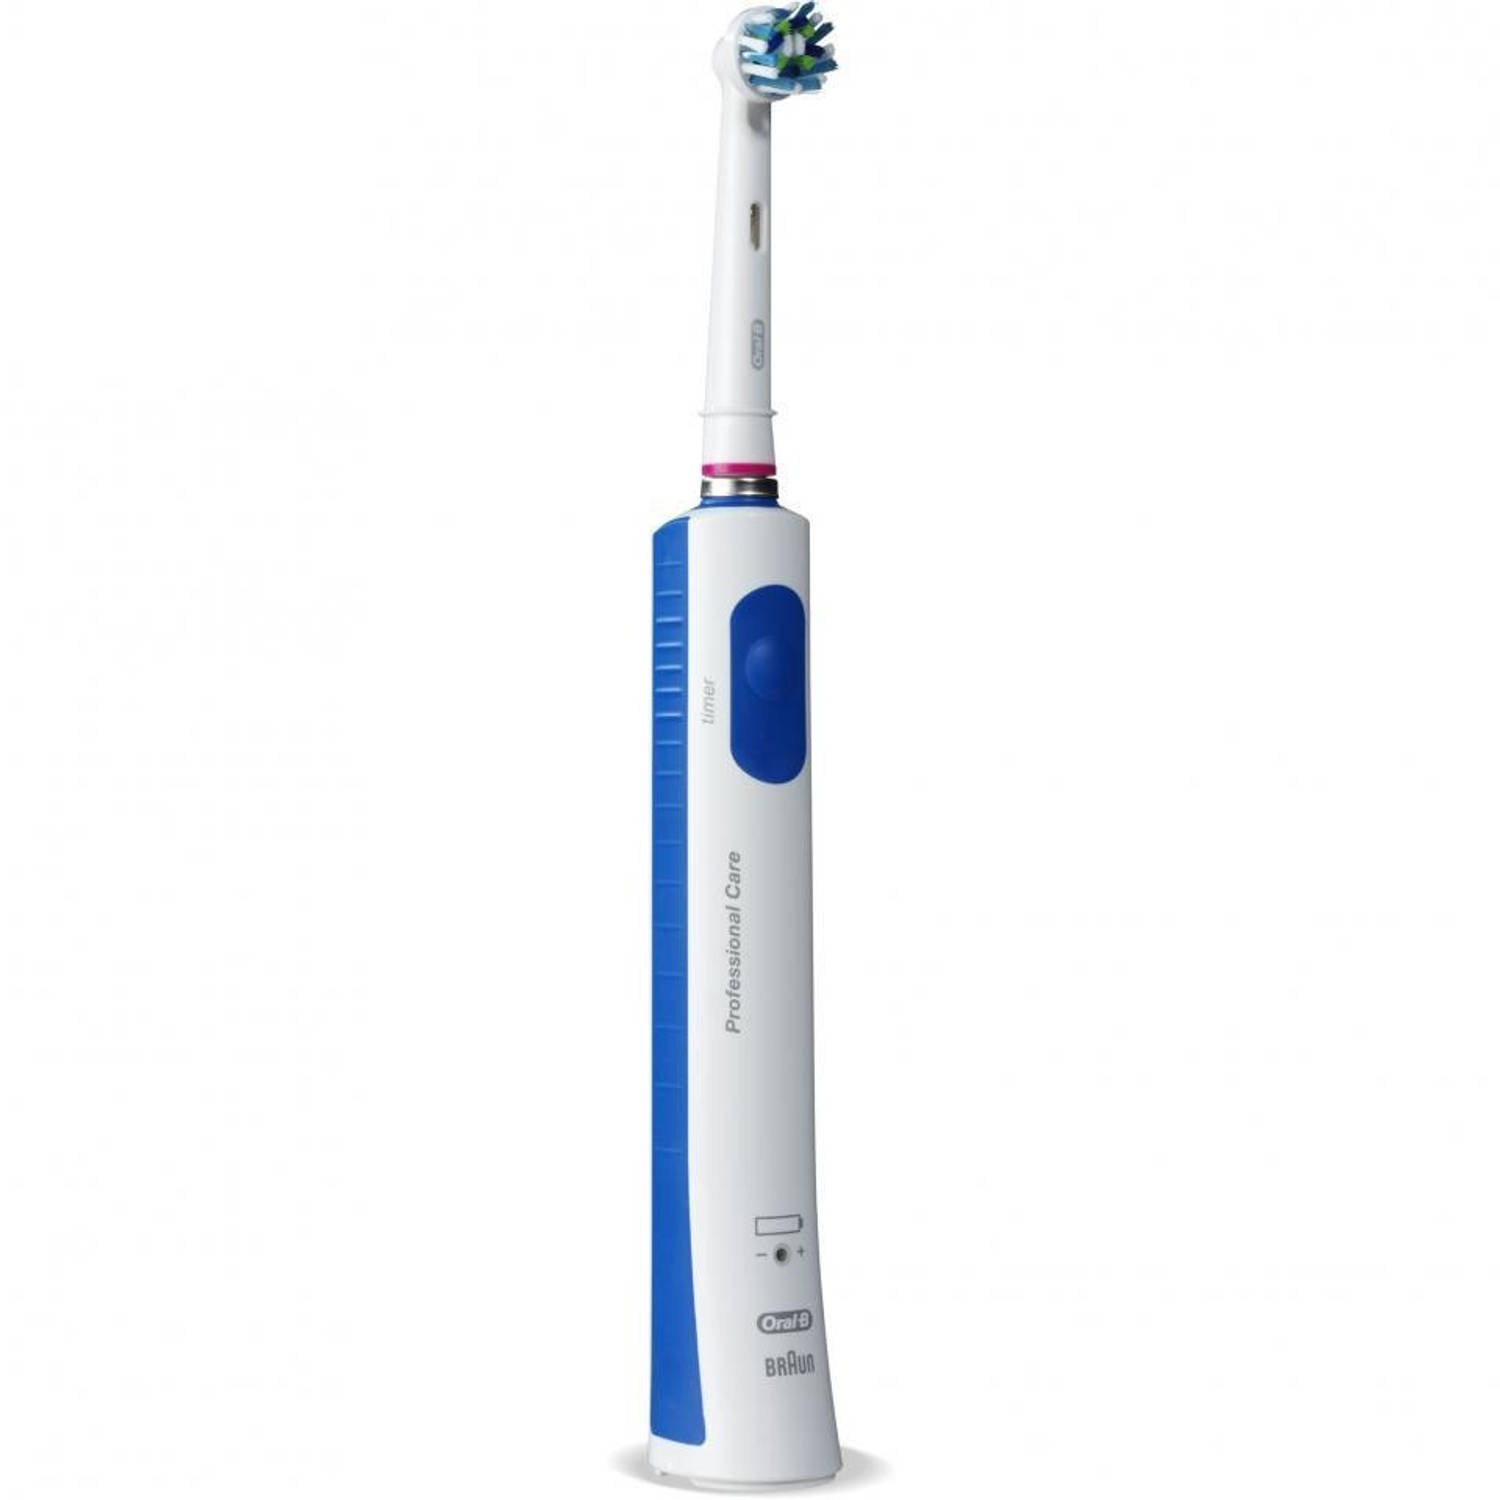 Mantel zak Liever Oral-B elektrische tandenborstel Pro 690 duo wit - 1 poetsstand | Blokker